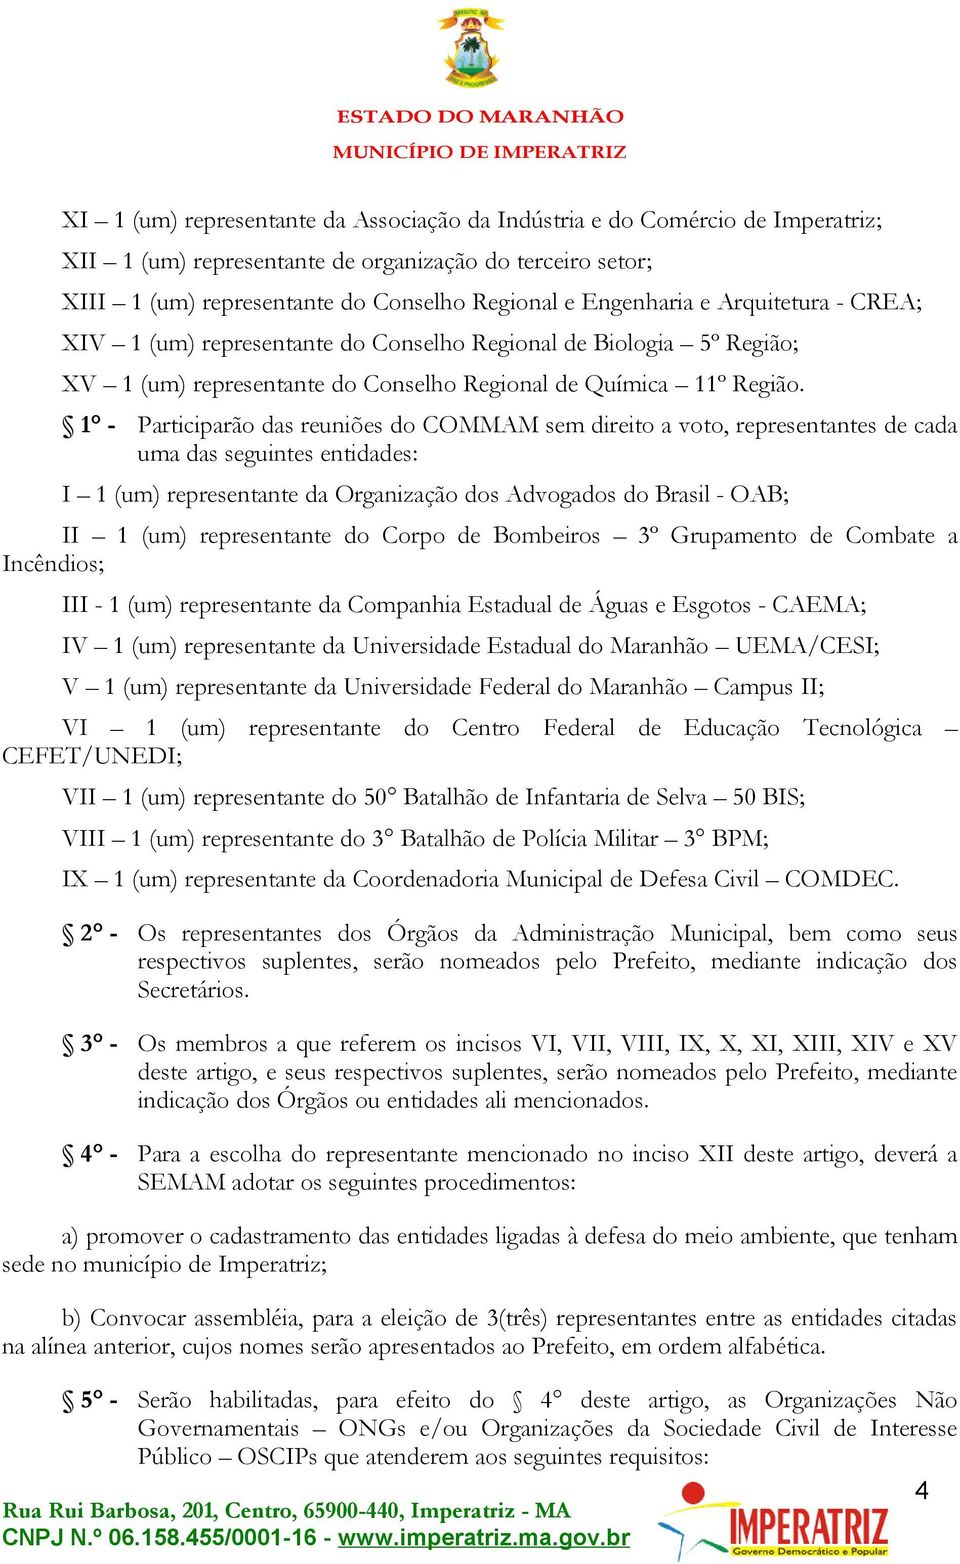 1 - Participarão das reuniões do COMMAM sem direito a voto, representantes de cada uma das seguintes entidades: I 1 (um) representante da Organização dos Advogados do Brasil - OAB; II 1 (um)